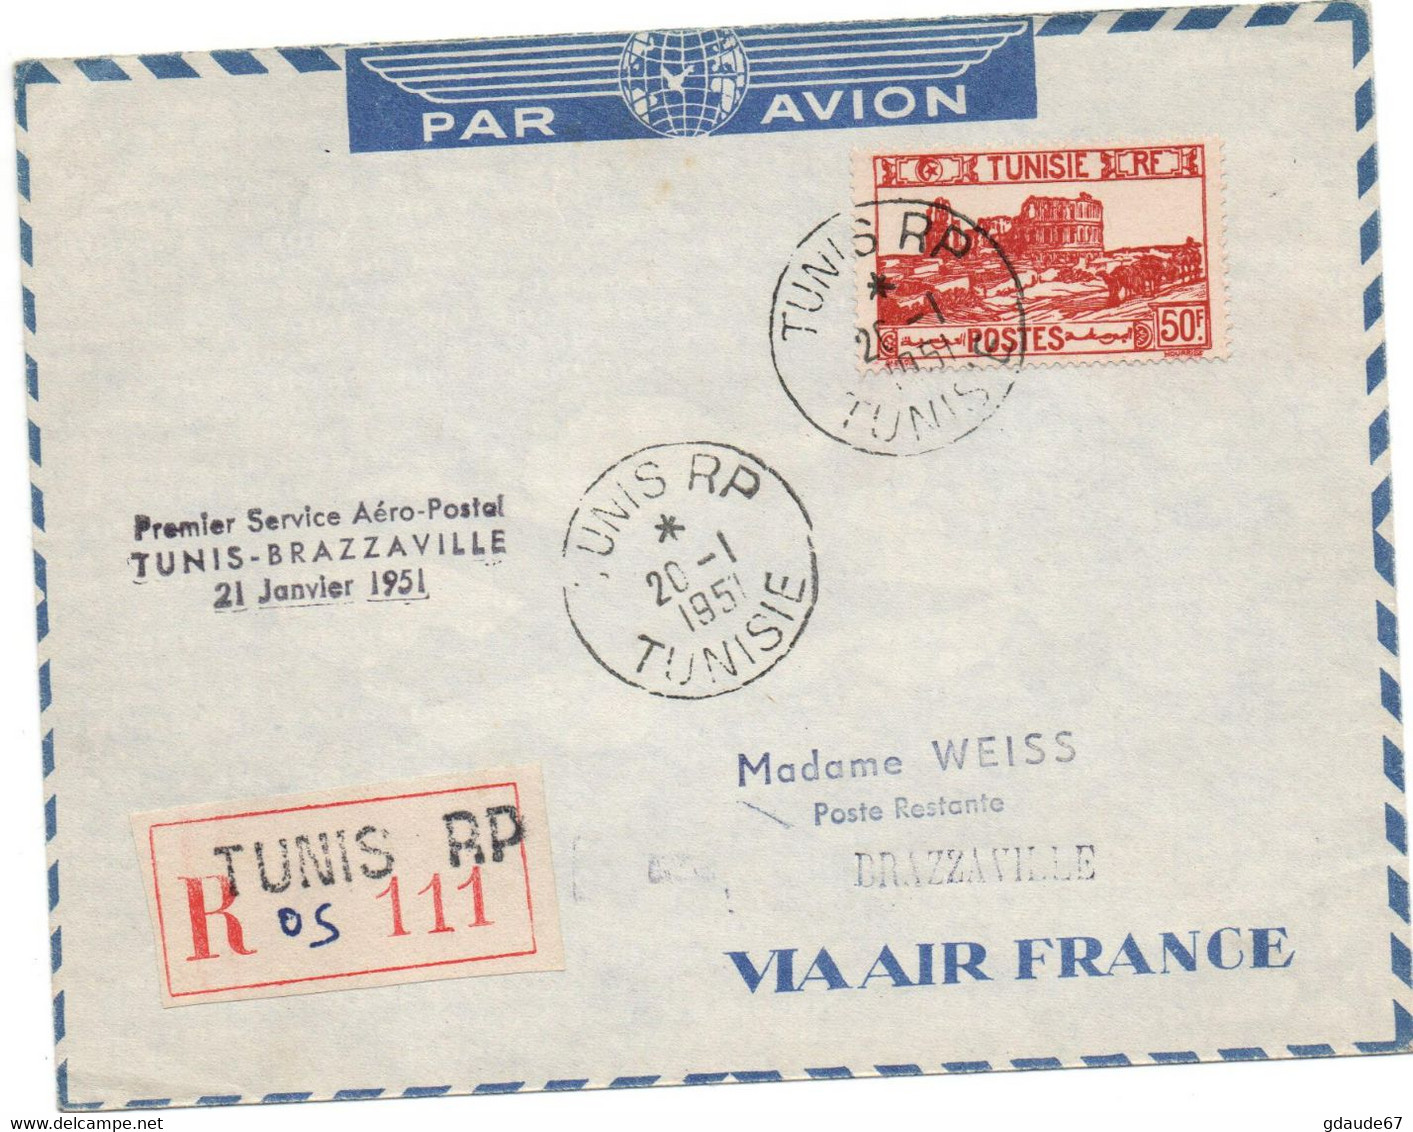 1951 - ENVELOPPE PAR AVION De TUNIS (TUNISIE) Avec PREMIER SERVICE AERO POSTAL TUNIS BRAZZAVILLE 21 JANVIER 1951 - Lettres & Documents